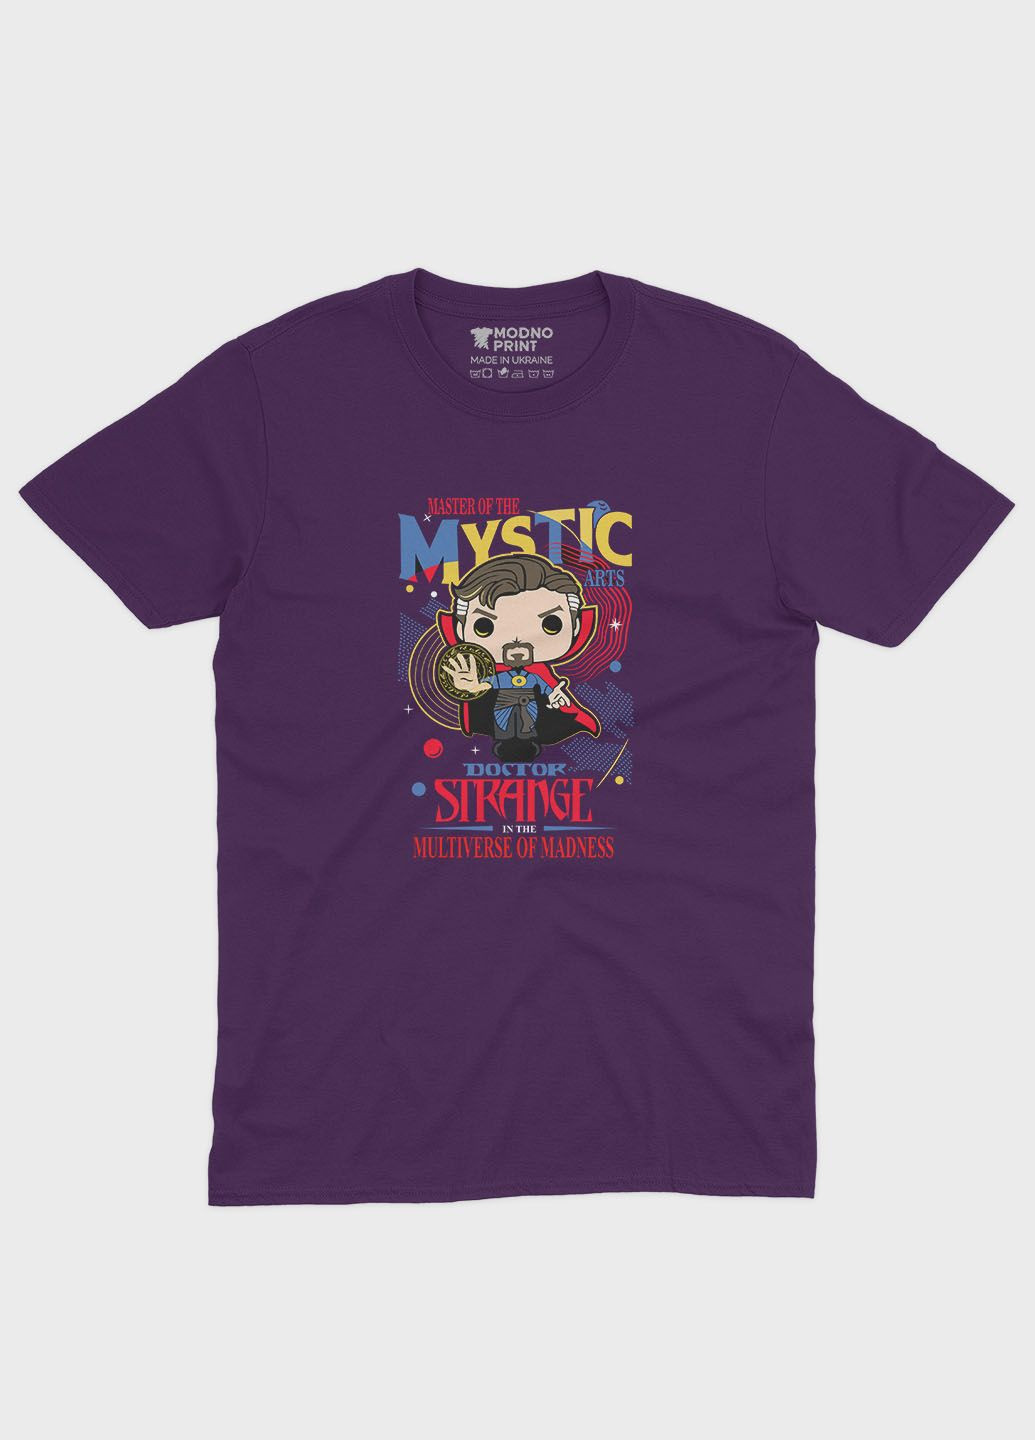 Фиолетовая демисезонная футболка для мальчика с принтом супергероя - доктор стрэндж (ts001-1-dby-006-020-006-b) Modno